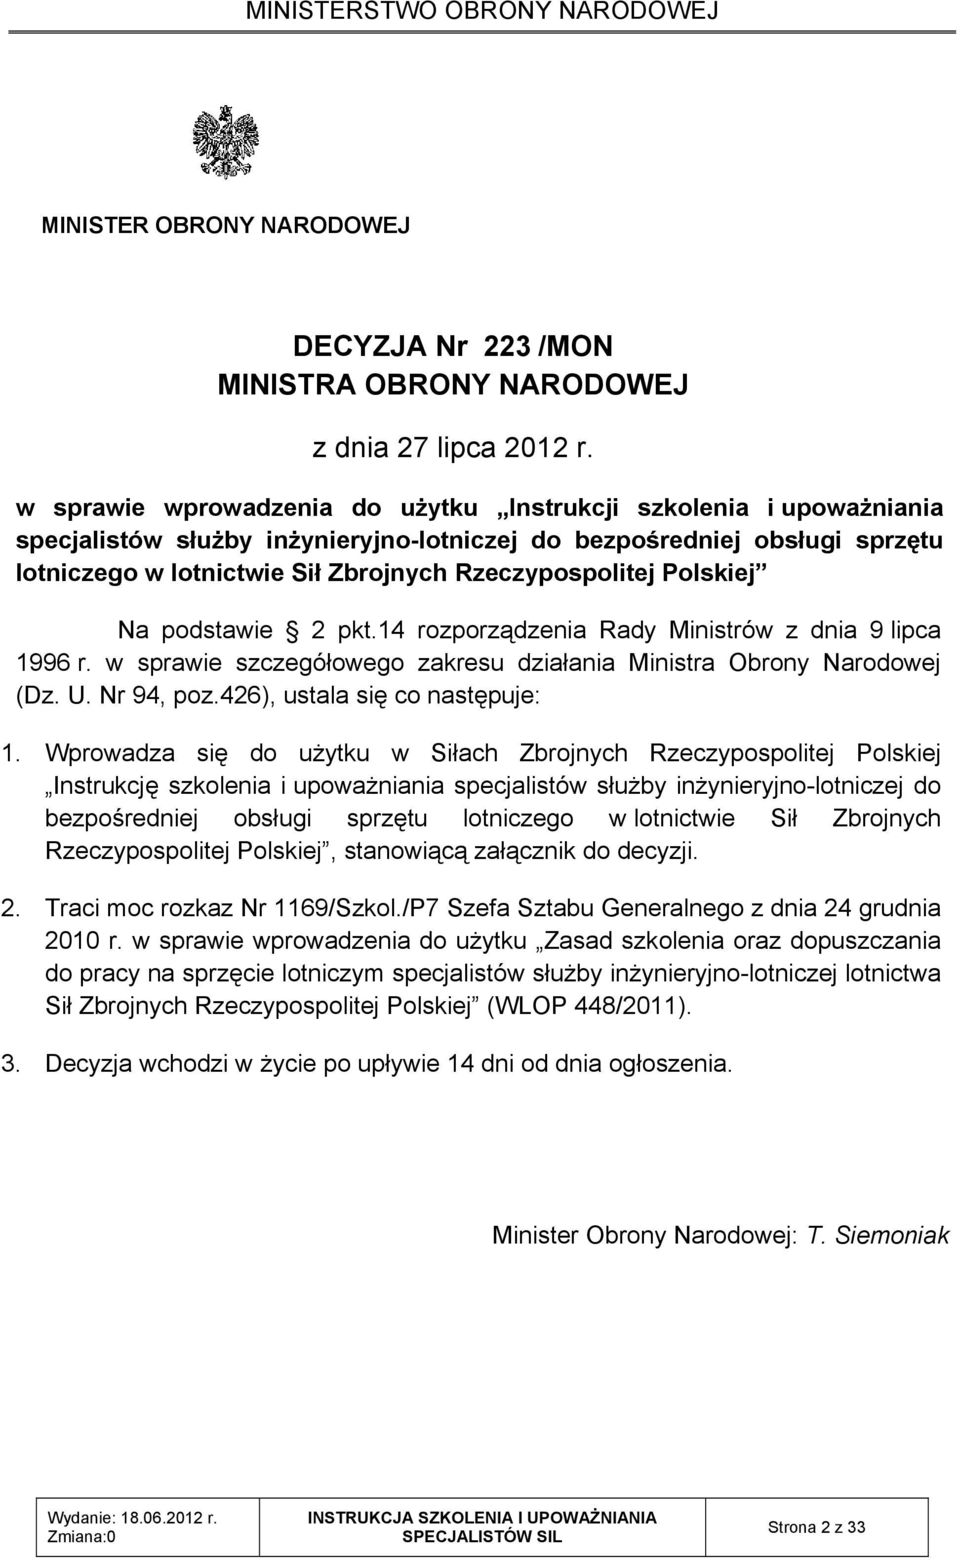 Polskiej Na podstawie 2 pkt.14 rozporządzenia Rady Ministrów z dnia 9 lipca 1996 r. w sprawie szczegółowego zakresu działania Ministra Obrony Narodowej (Dz. U. Nr 94, poz.